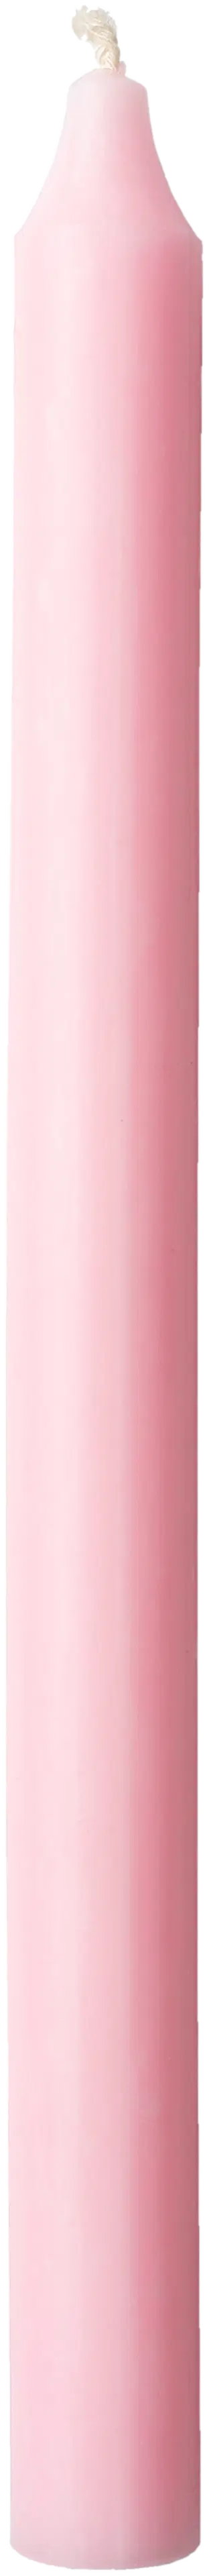 Havi rustiikki Kruunukynttilä vaaleanpunainen 29cm 1kpl 12-14h